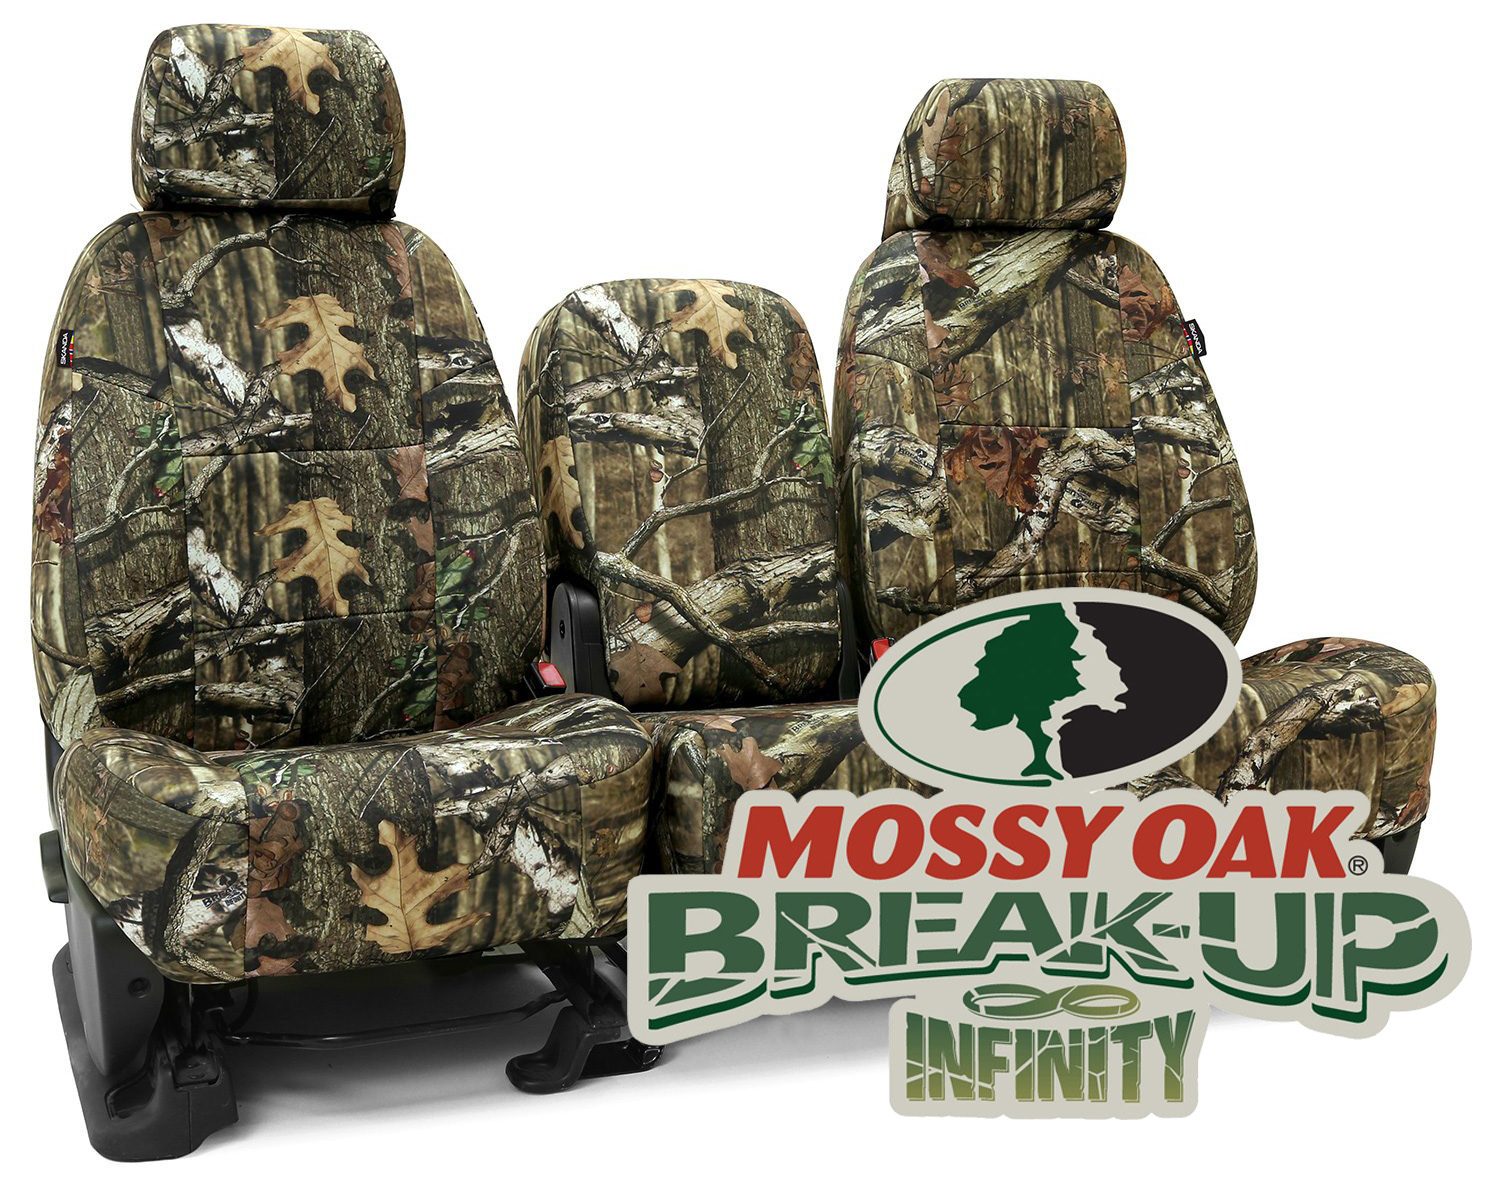 Mossy Oak Break-Up Infinity seat covers